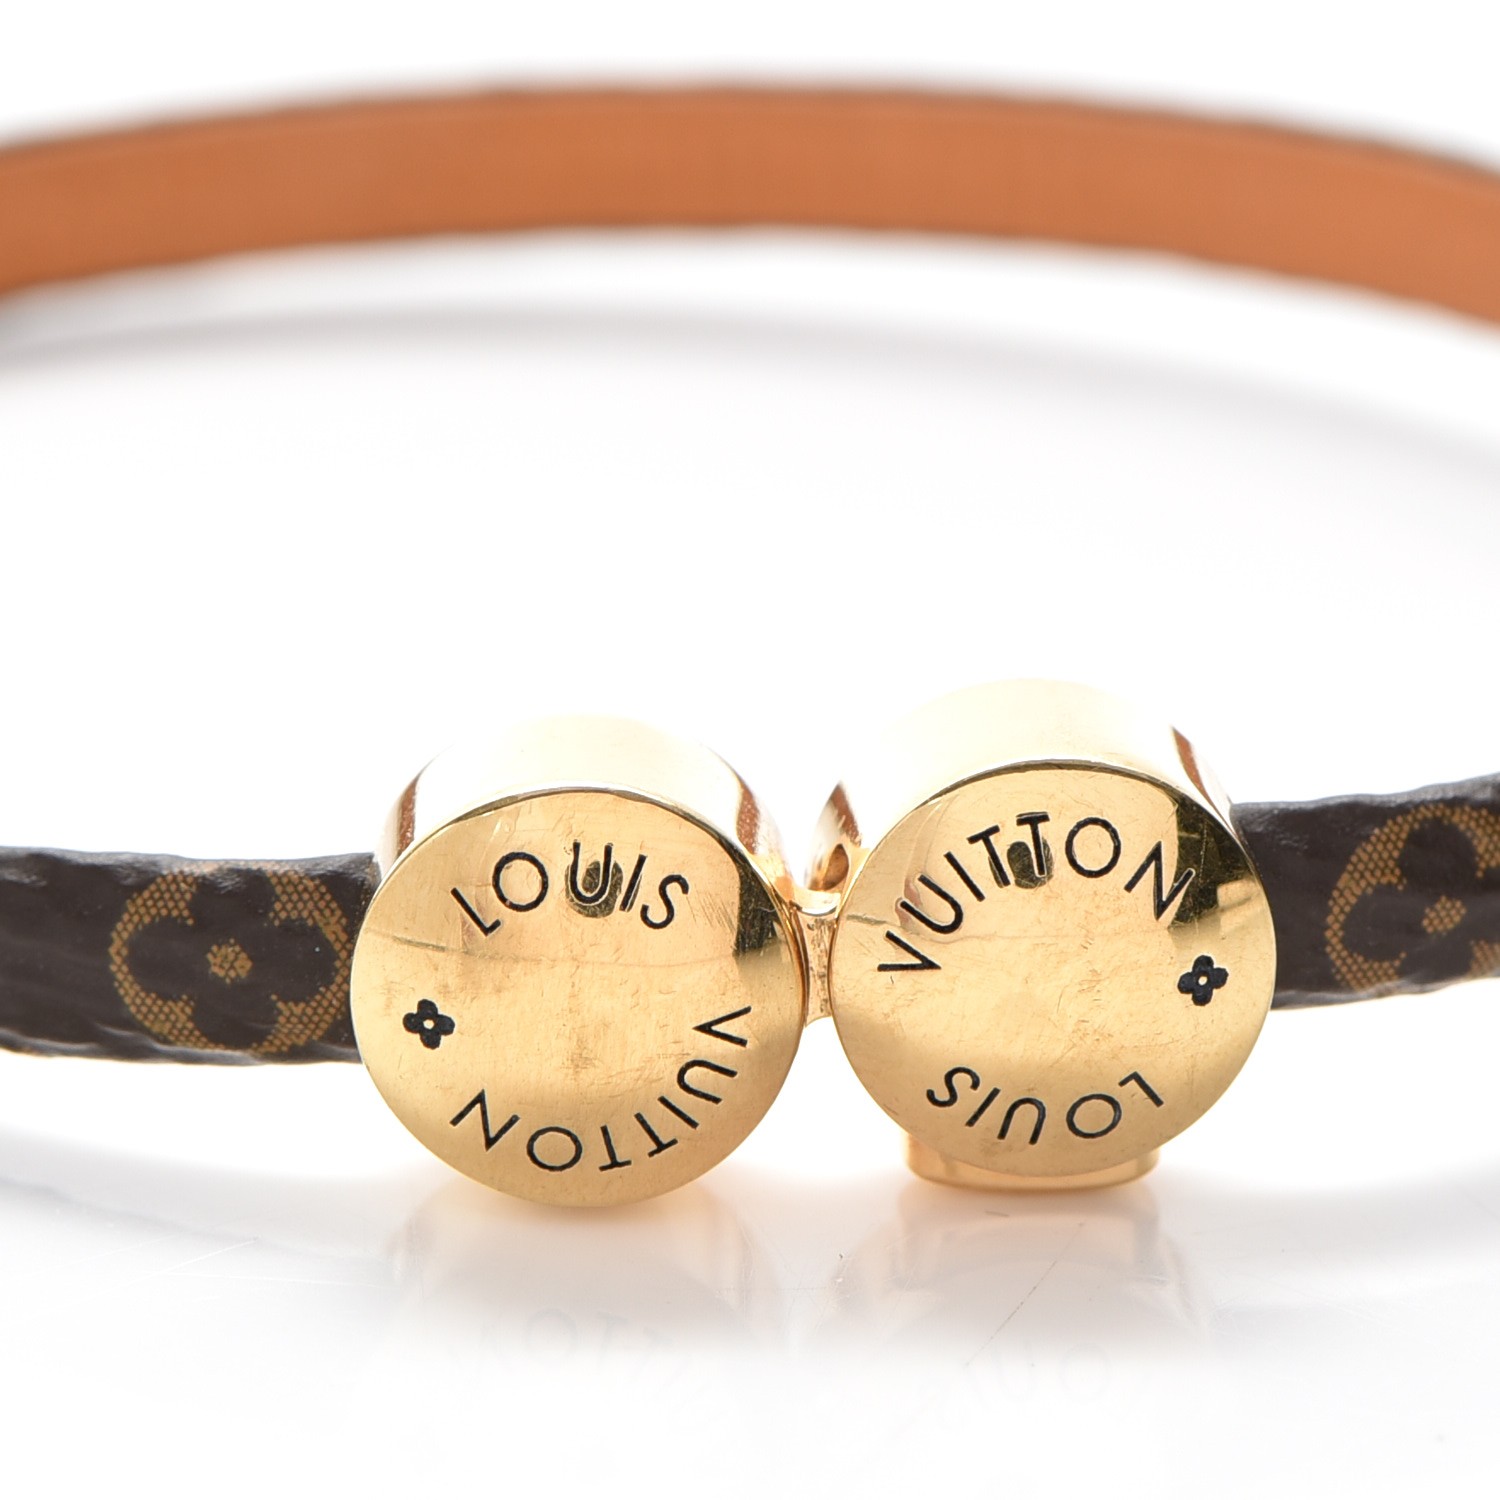 Louis Vuitton Party Bag Bracelets, Bragmybag